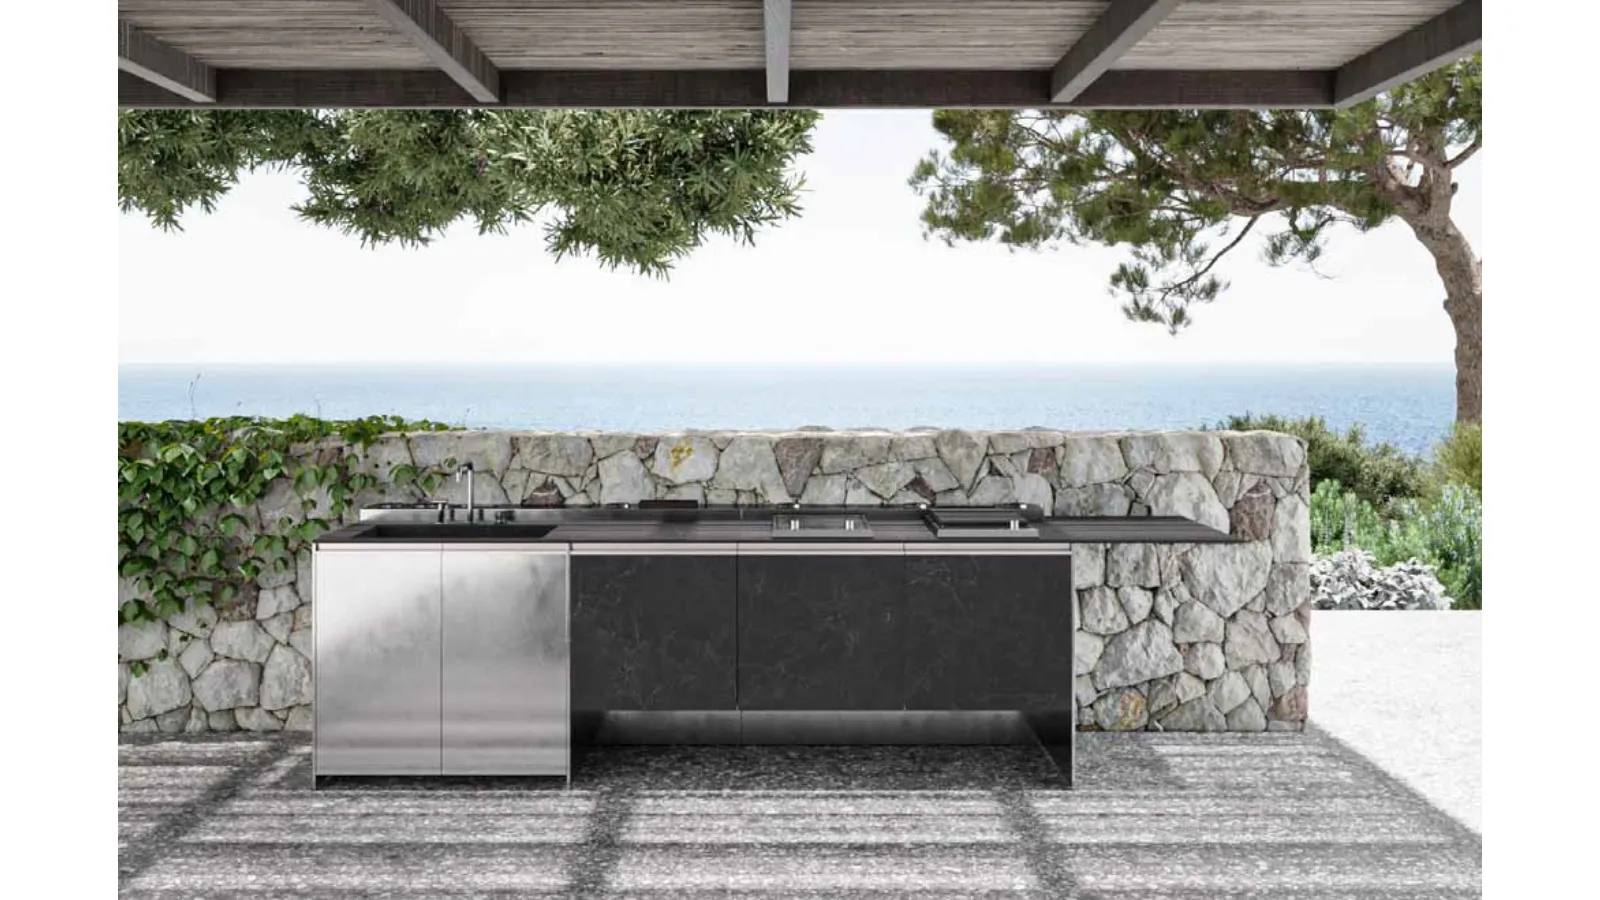 Cucina Design con isola Santorini 1|3 in gres e acciaio inox di Zampieri Cucine